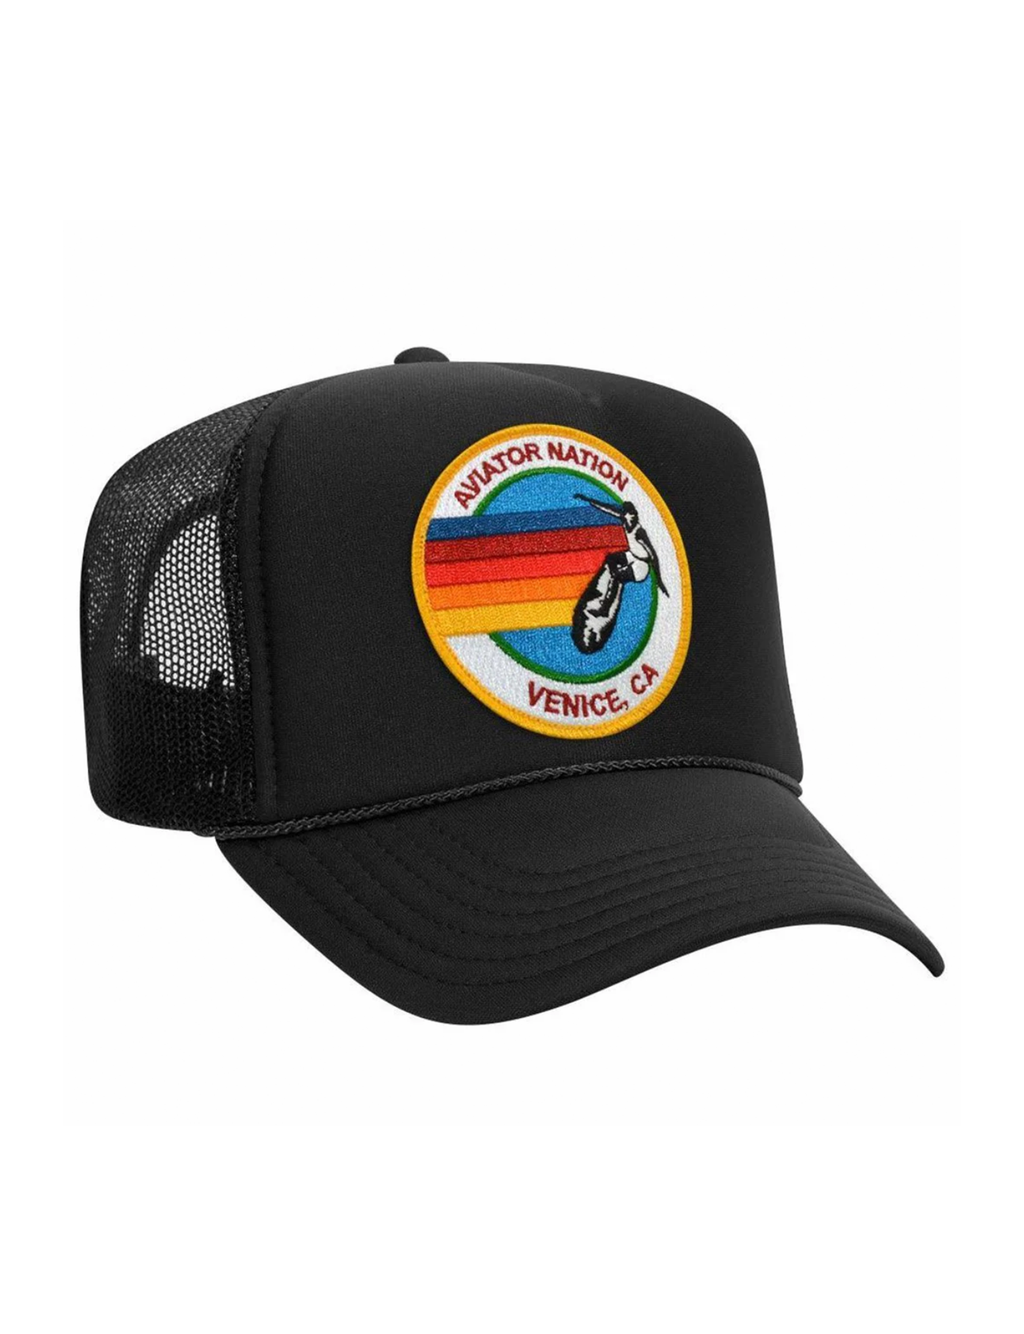 Signature Vintage Low Rise Trucker Hat, Black